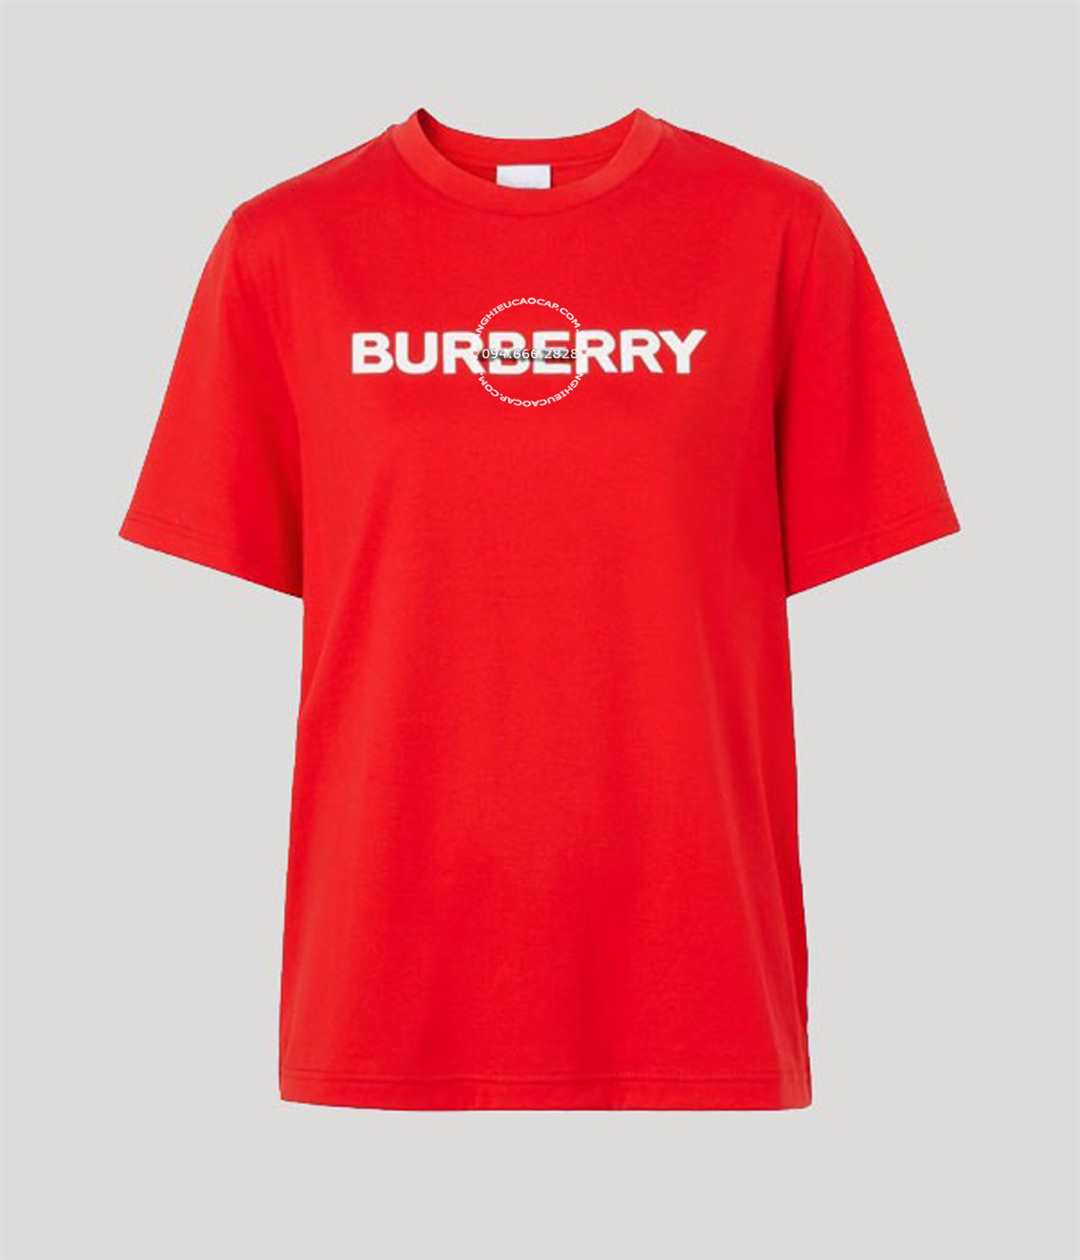 Áo phong cổ tròn Burberry hàng hiệu cao cấp mầu đỏ